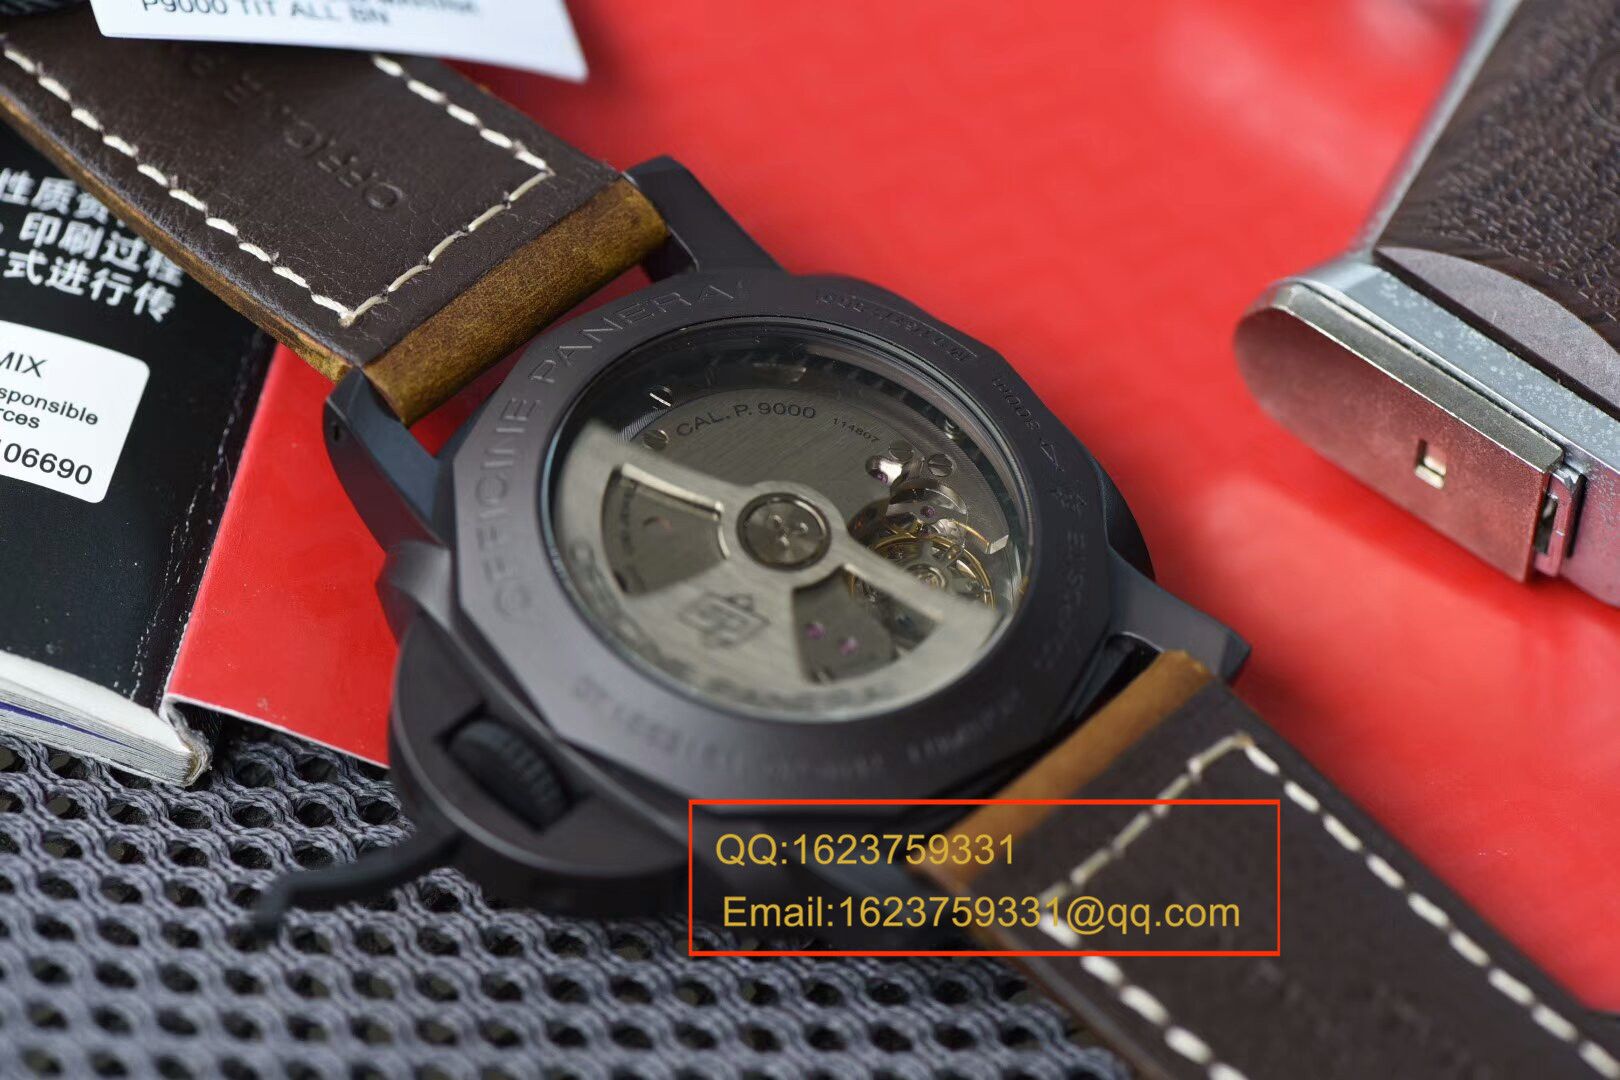 【独家视频测评VS厂1:1超A精仿手表】沛纳海LUMINOR 1950系列PAM 00386腕表 